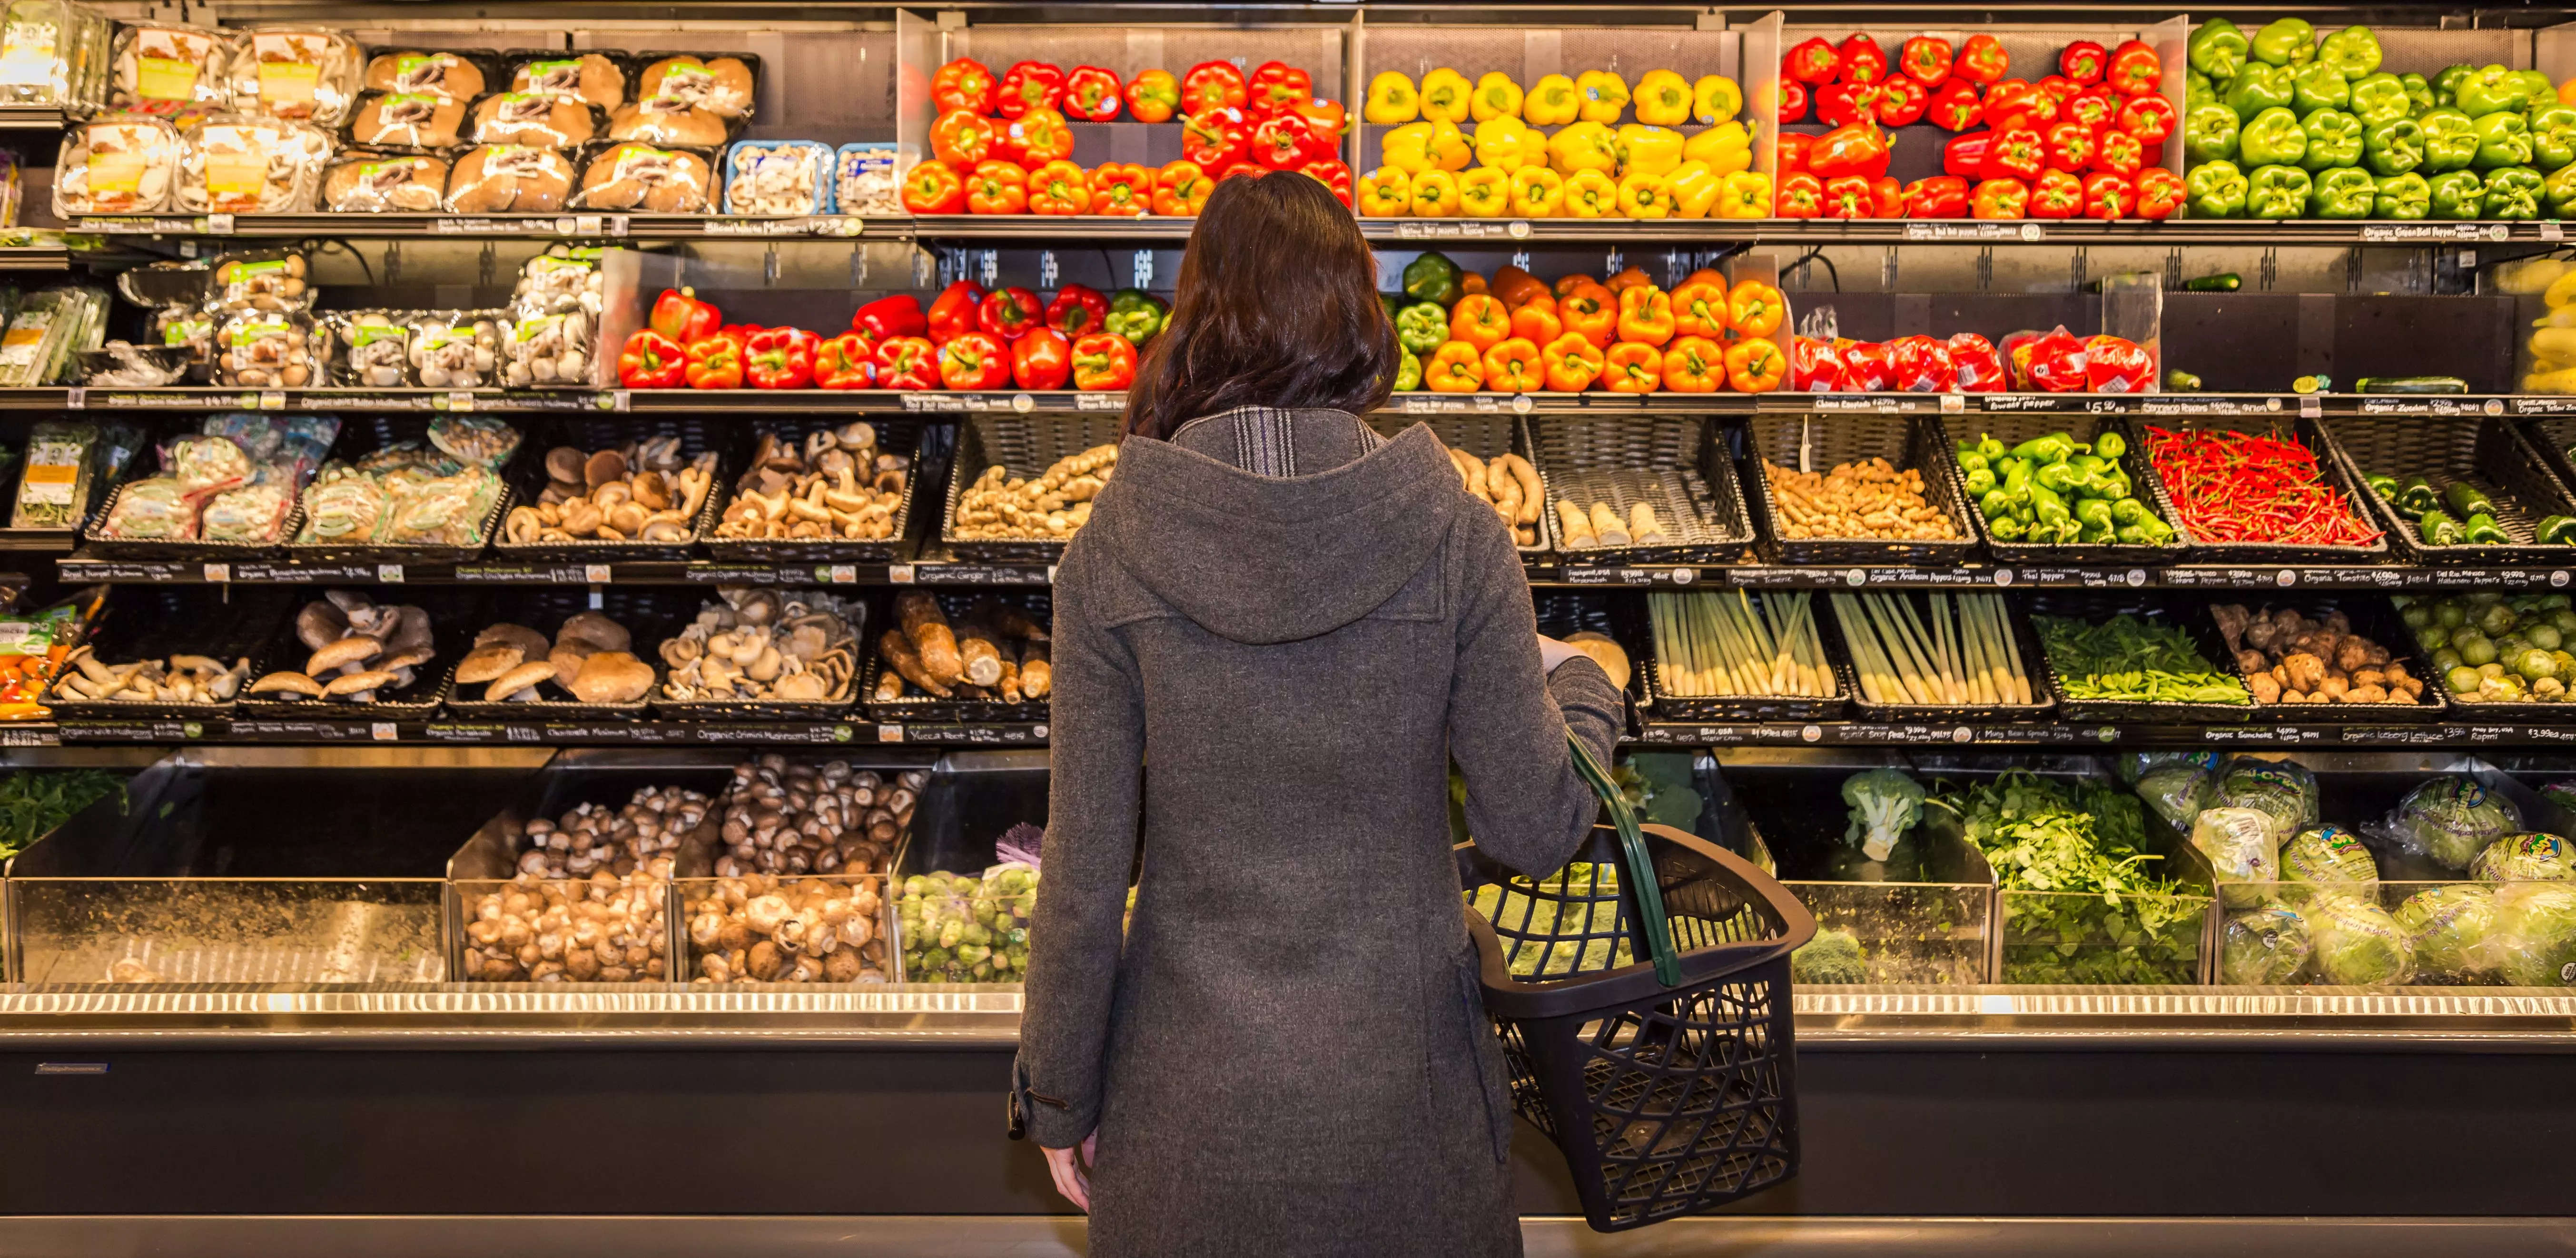 
Millennials and Gen Z's trendy new splurge: groceries
